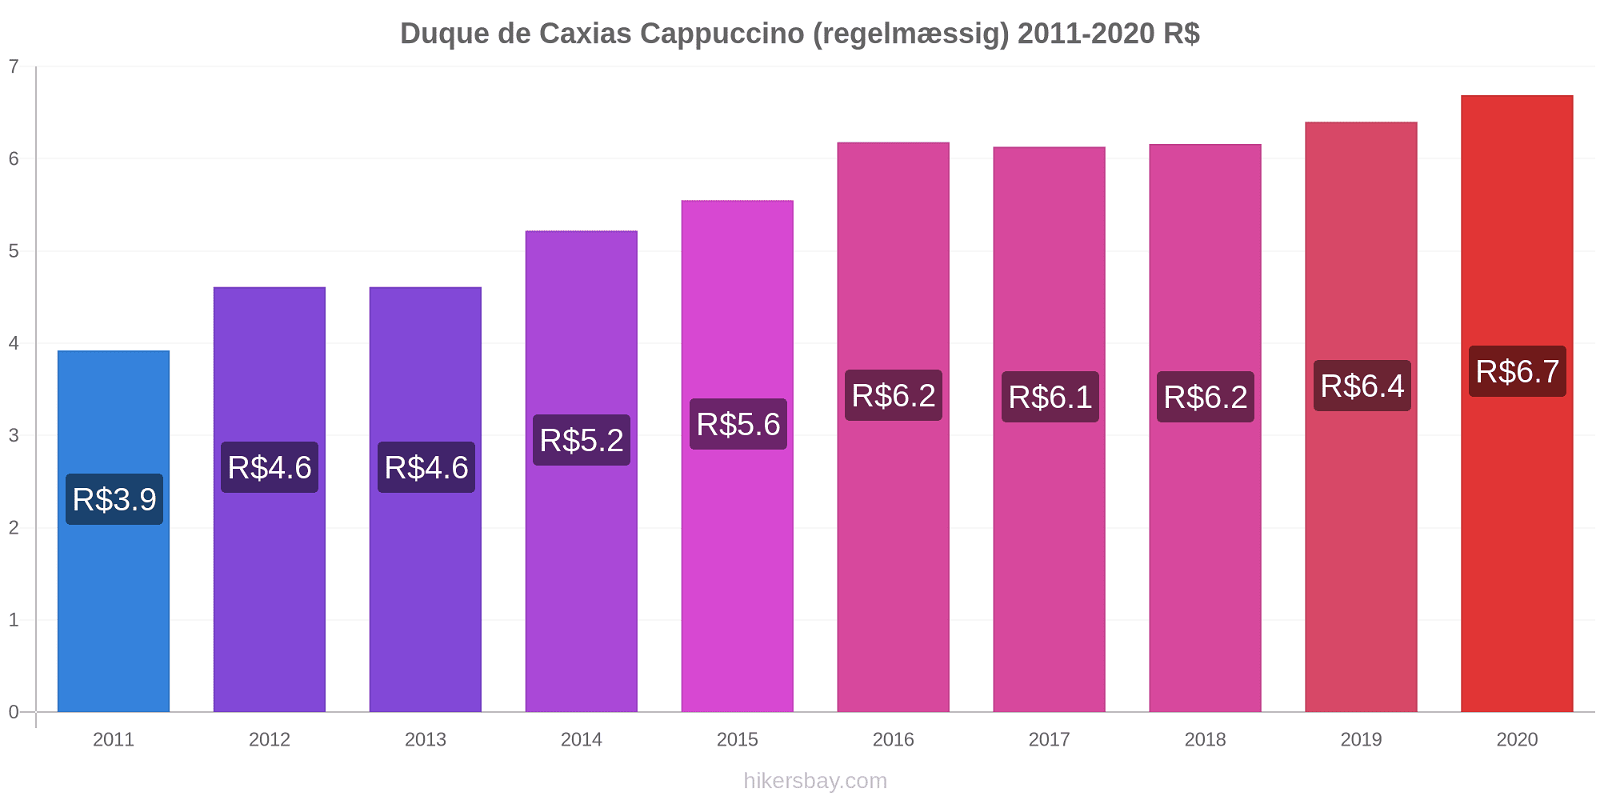 Duque de Caxias prisændringer Cappuccino (regelmæssig) hikersbay.com